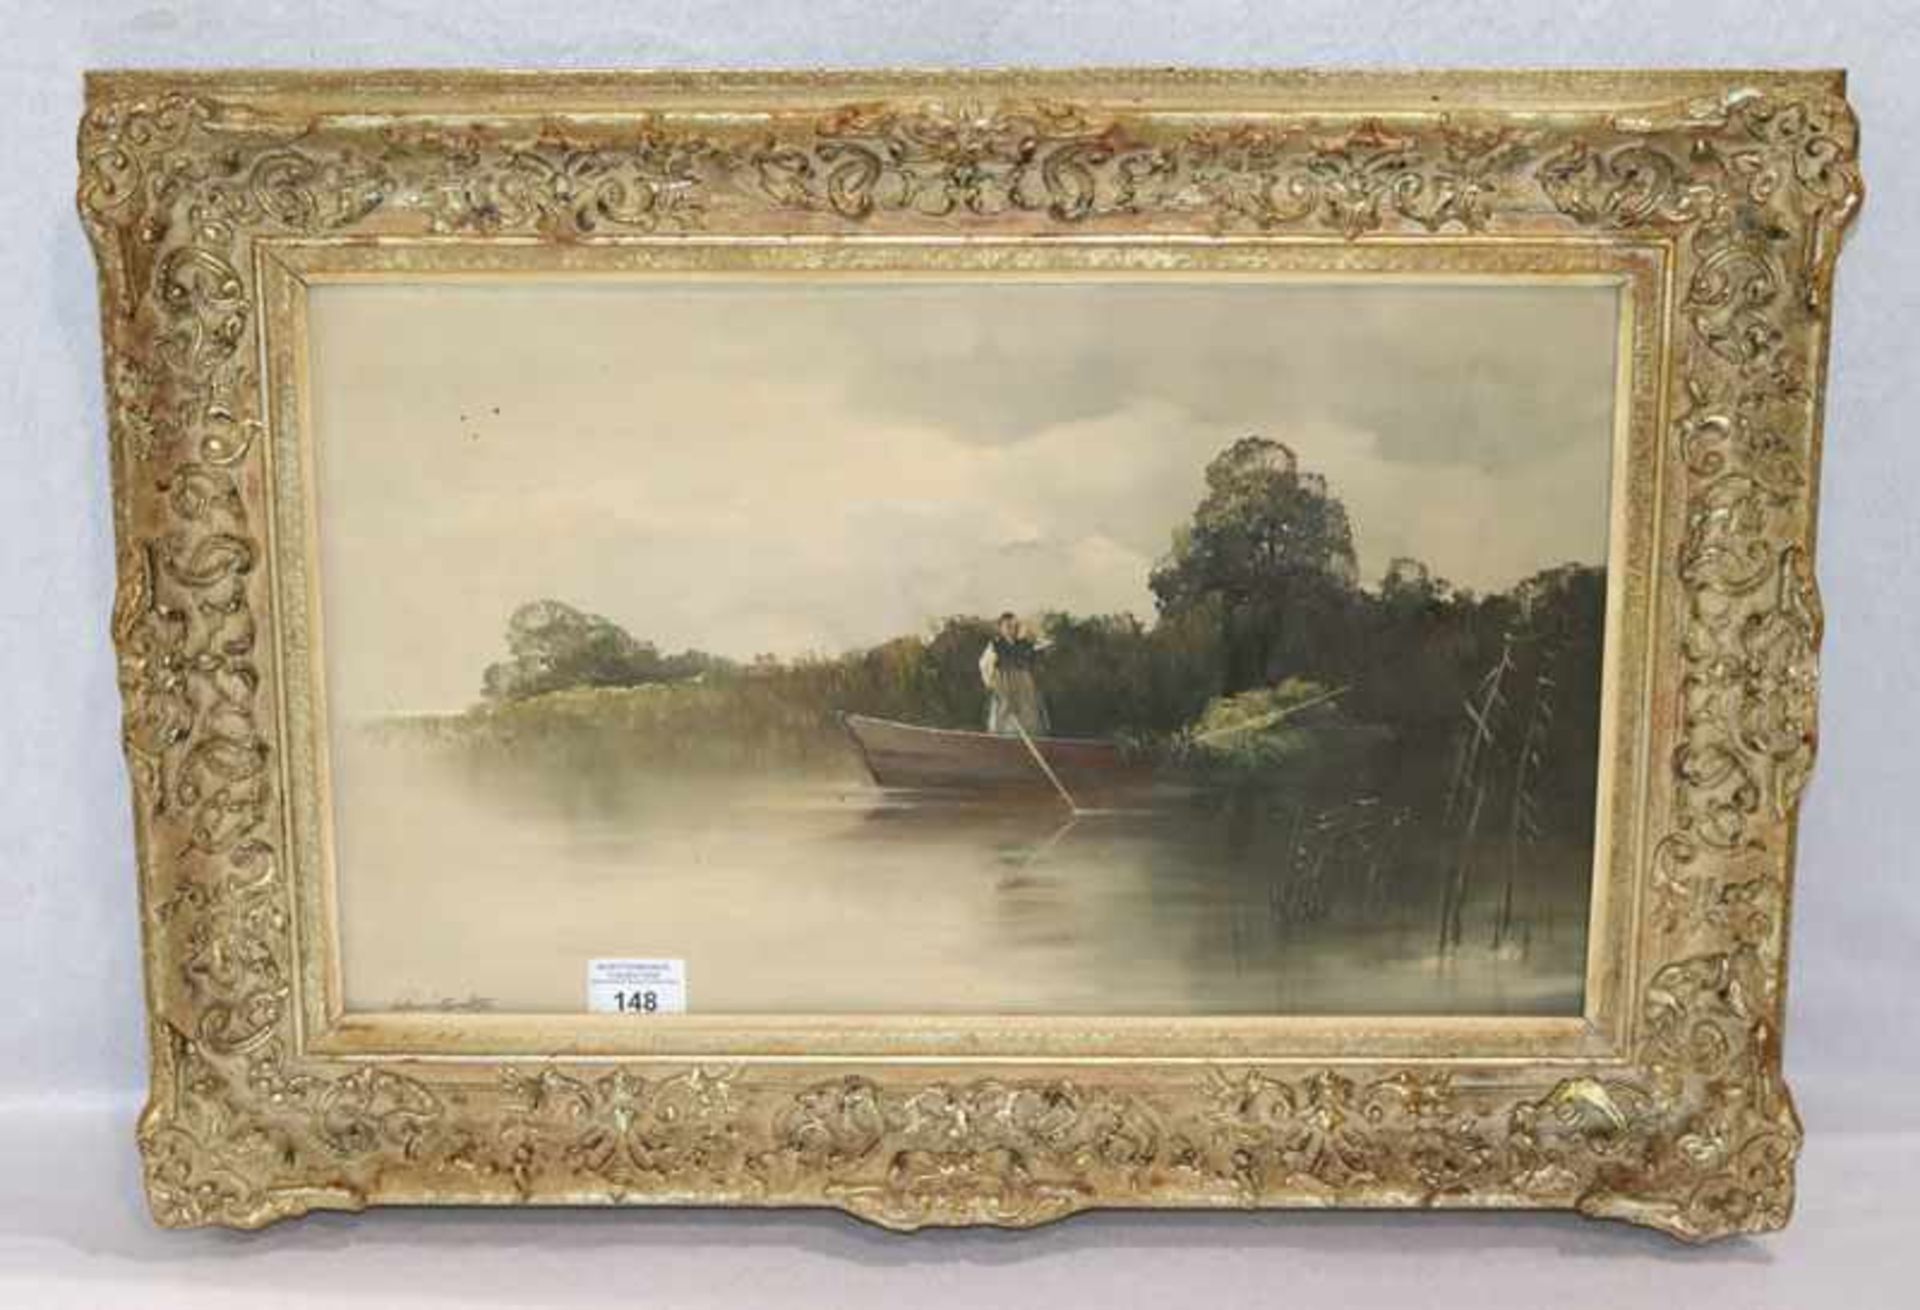 Gemälde ÖL/Hartfaser 'Ufer-Szenerie mit Ruderboot', undeutlich signiert, gerahmt, Rahmen